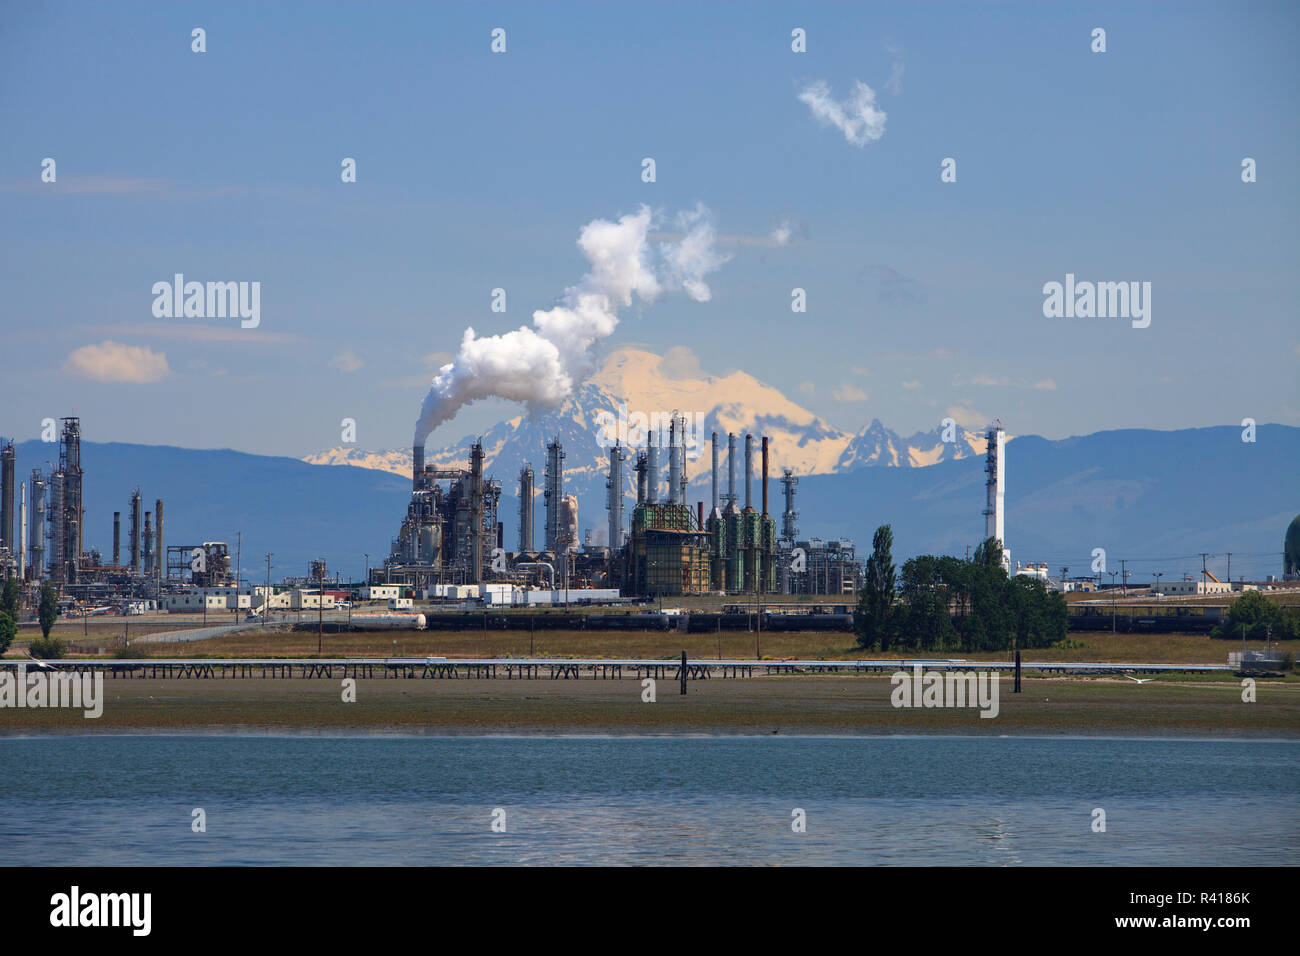 Raffinerie de pétrole Shell Puget Sound avec Mt. Baker derrière, près de Anacortes, Washington State, USA Banque D'Images